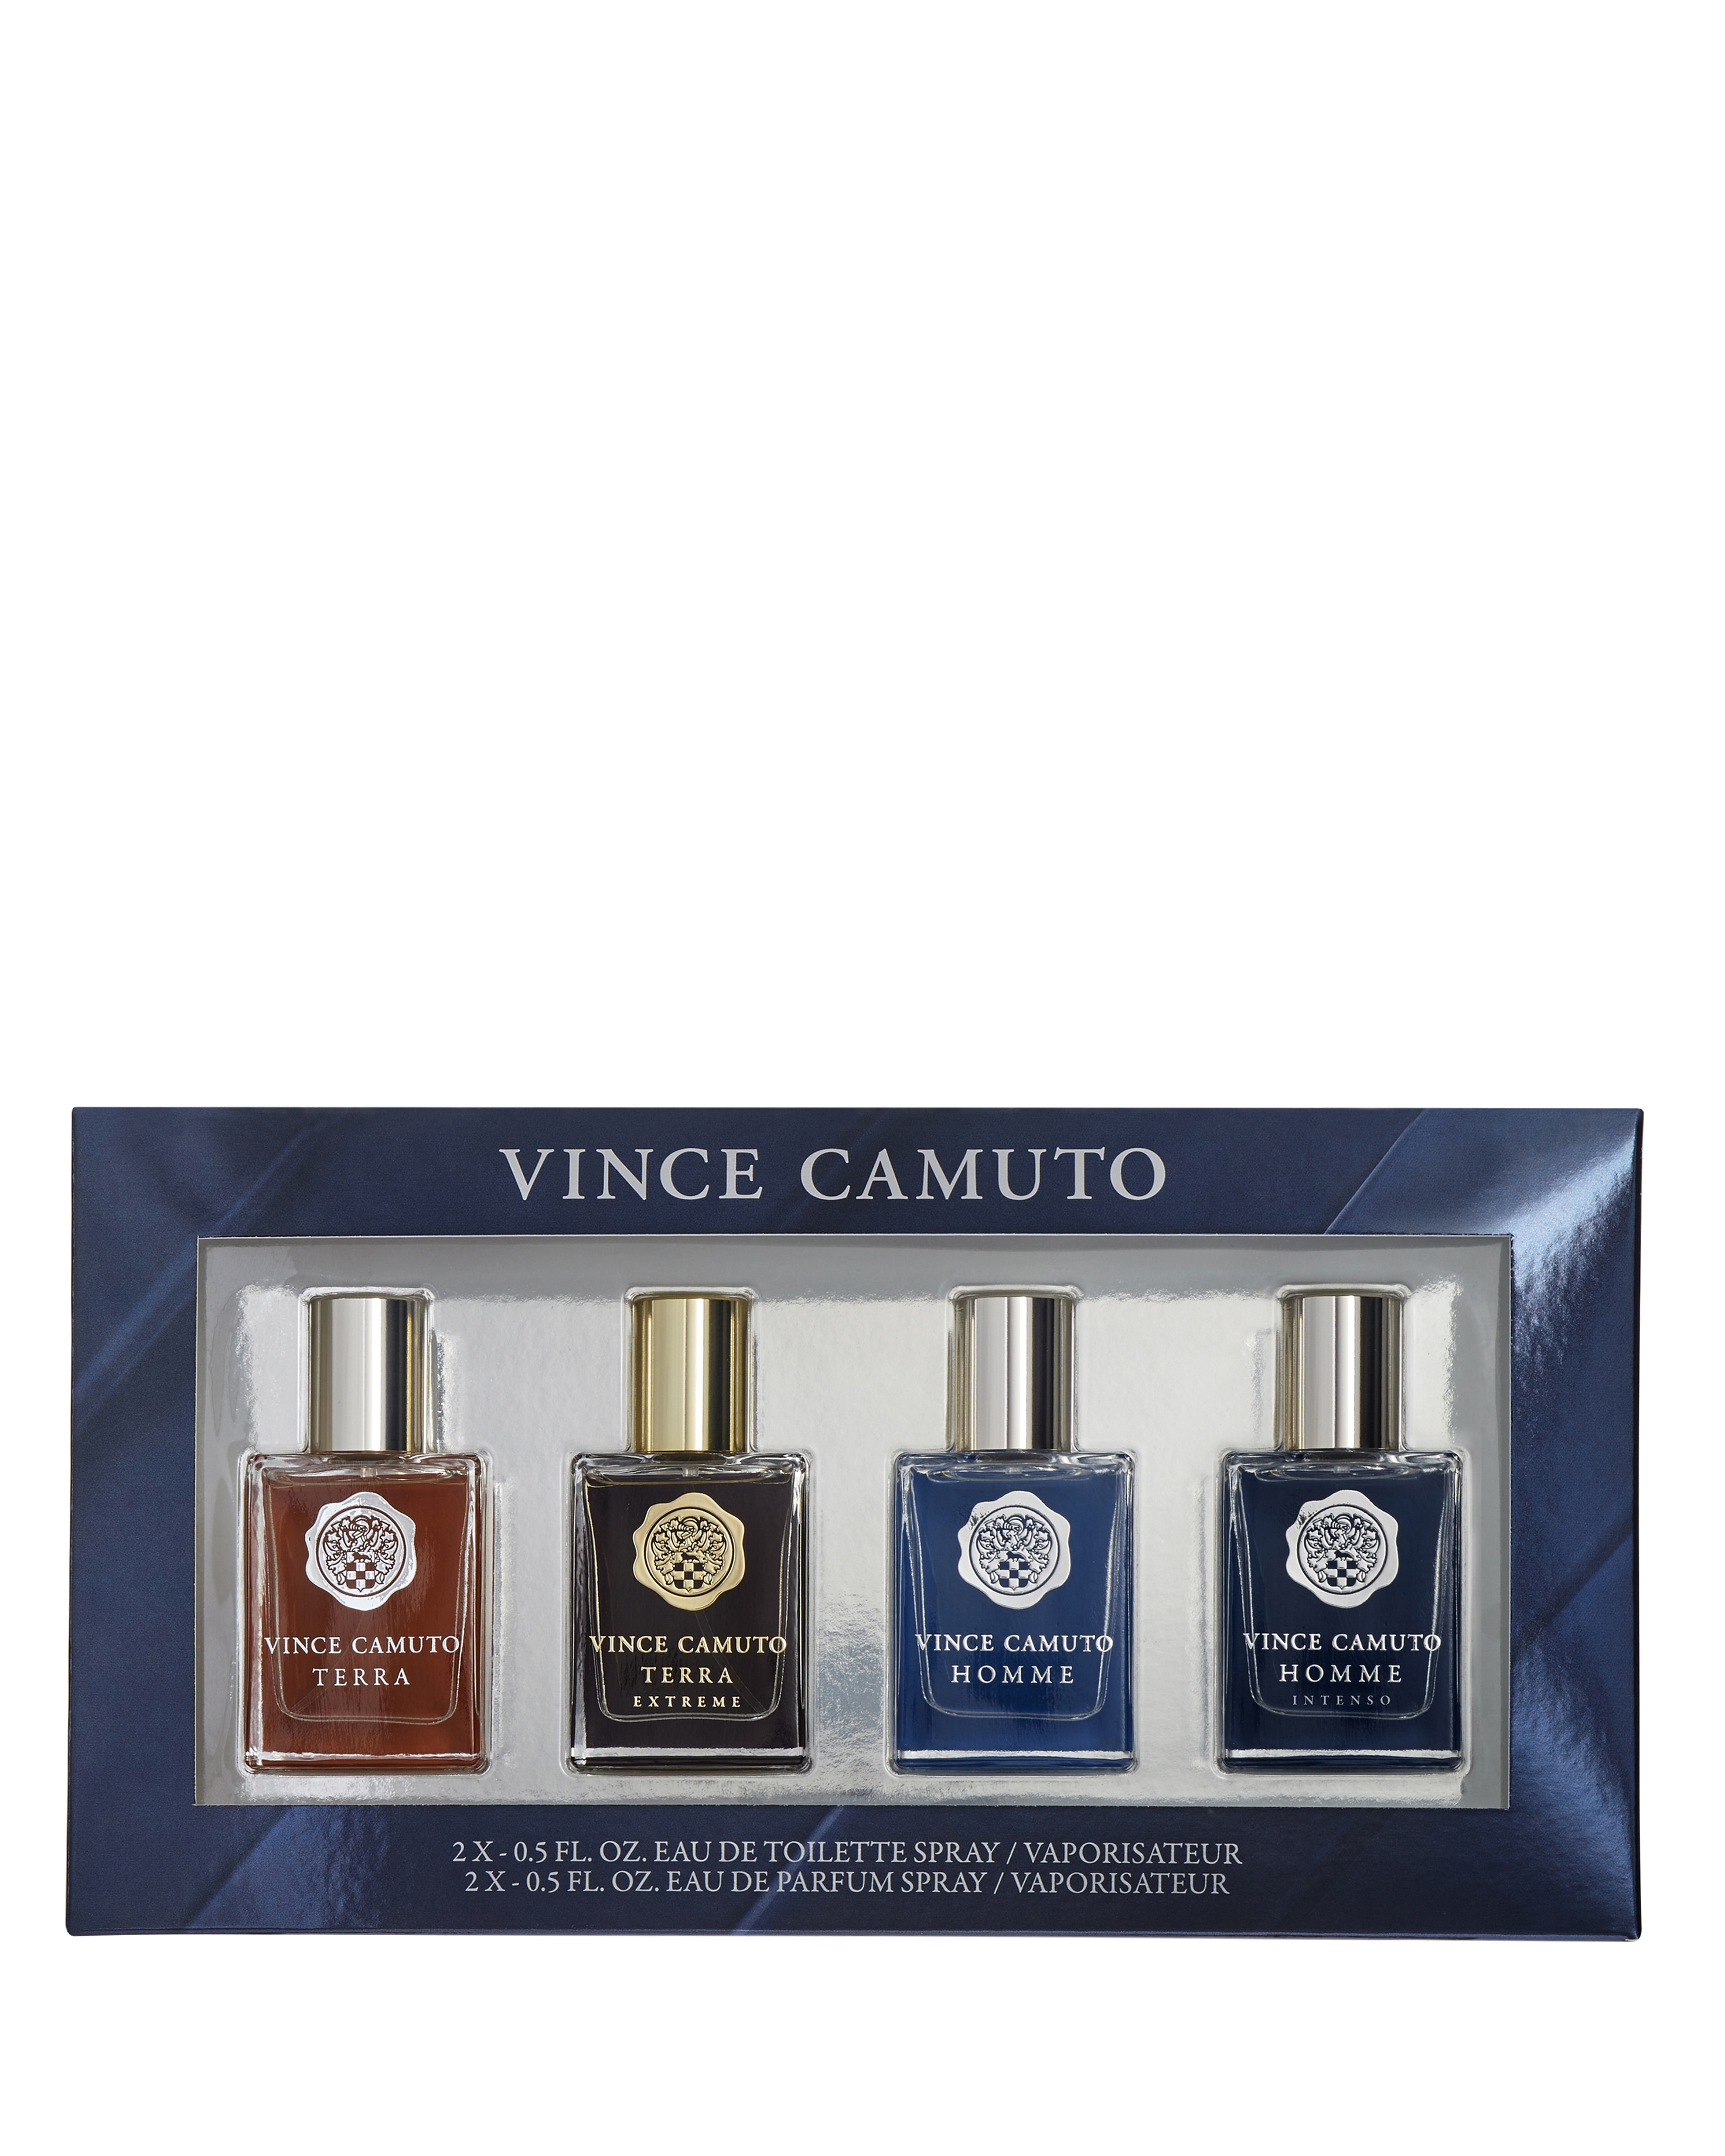 Shop for samples of Vince Camuto Homme (Eau de Toilette) by Vince